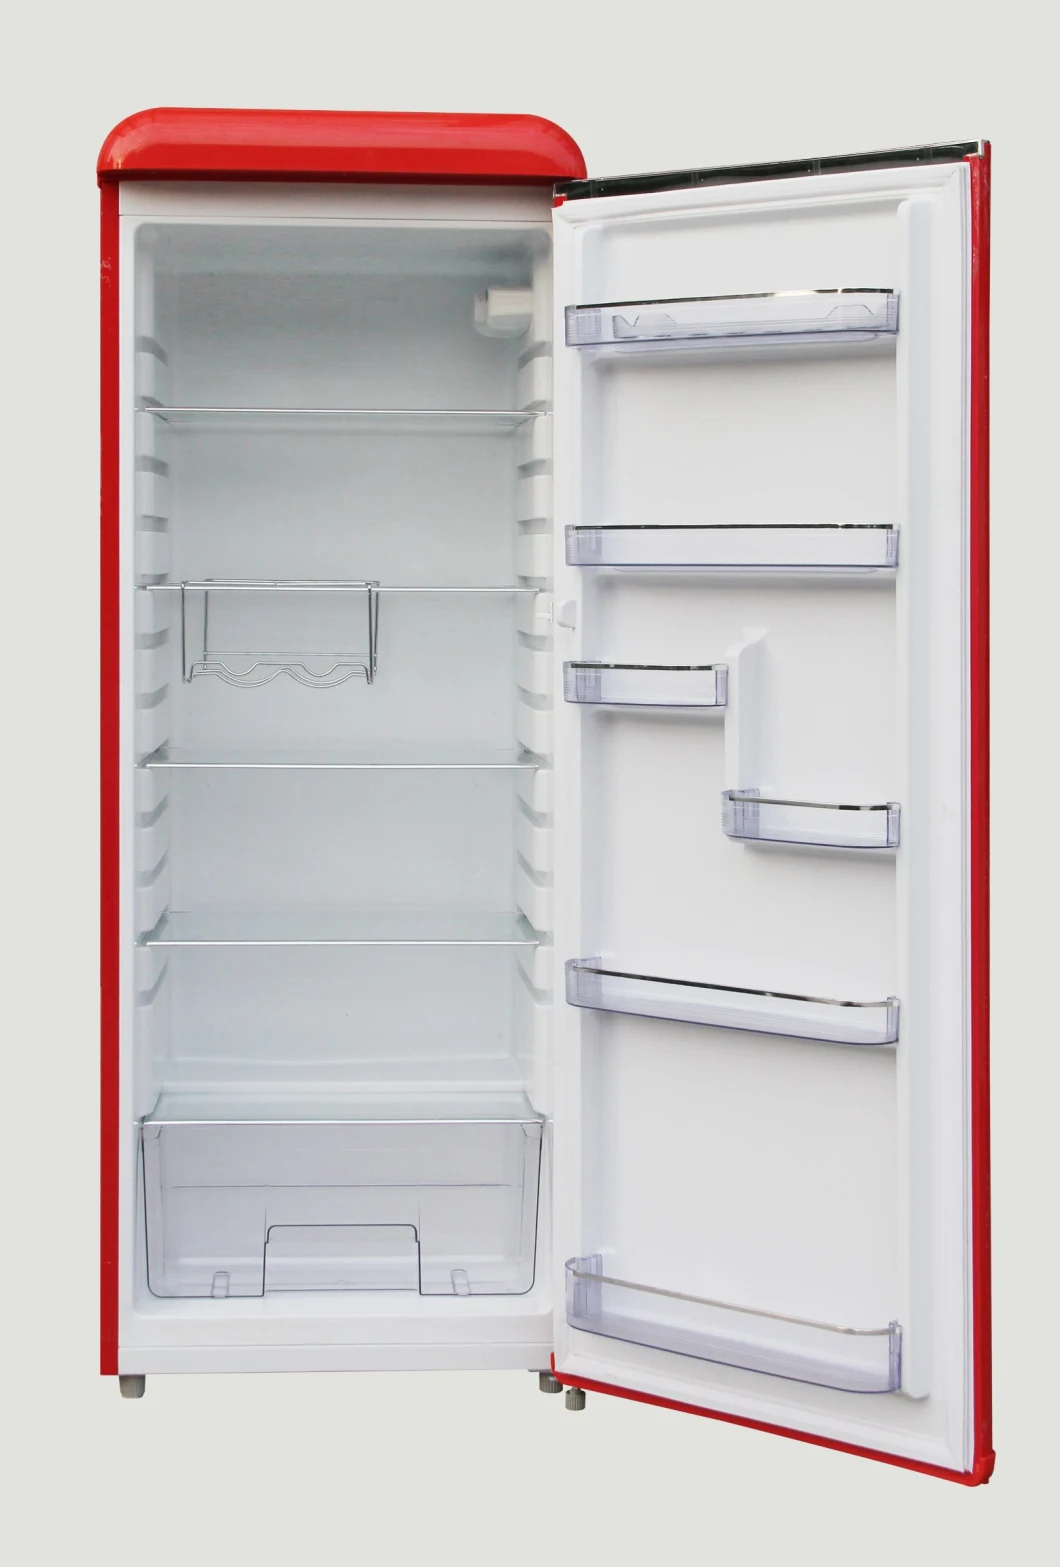 Single Door 240 L Retro Refrigerator, De Frost, 220-240V/50Hz, 55cm Wide